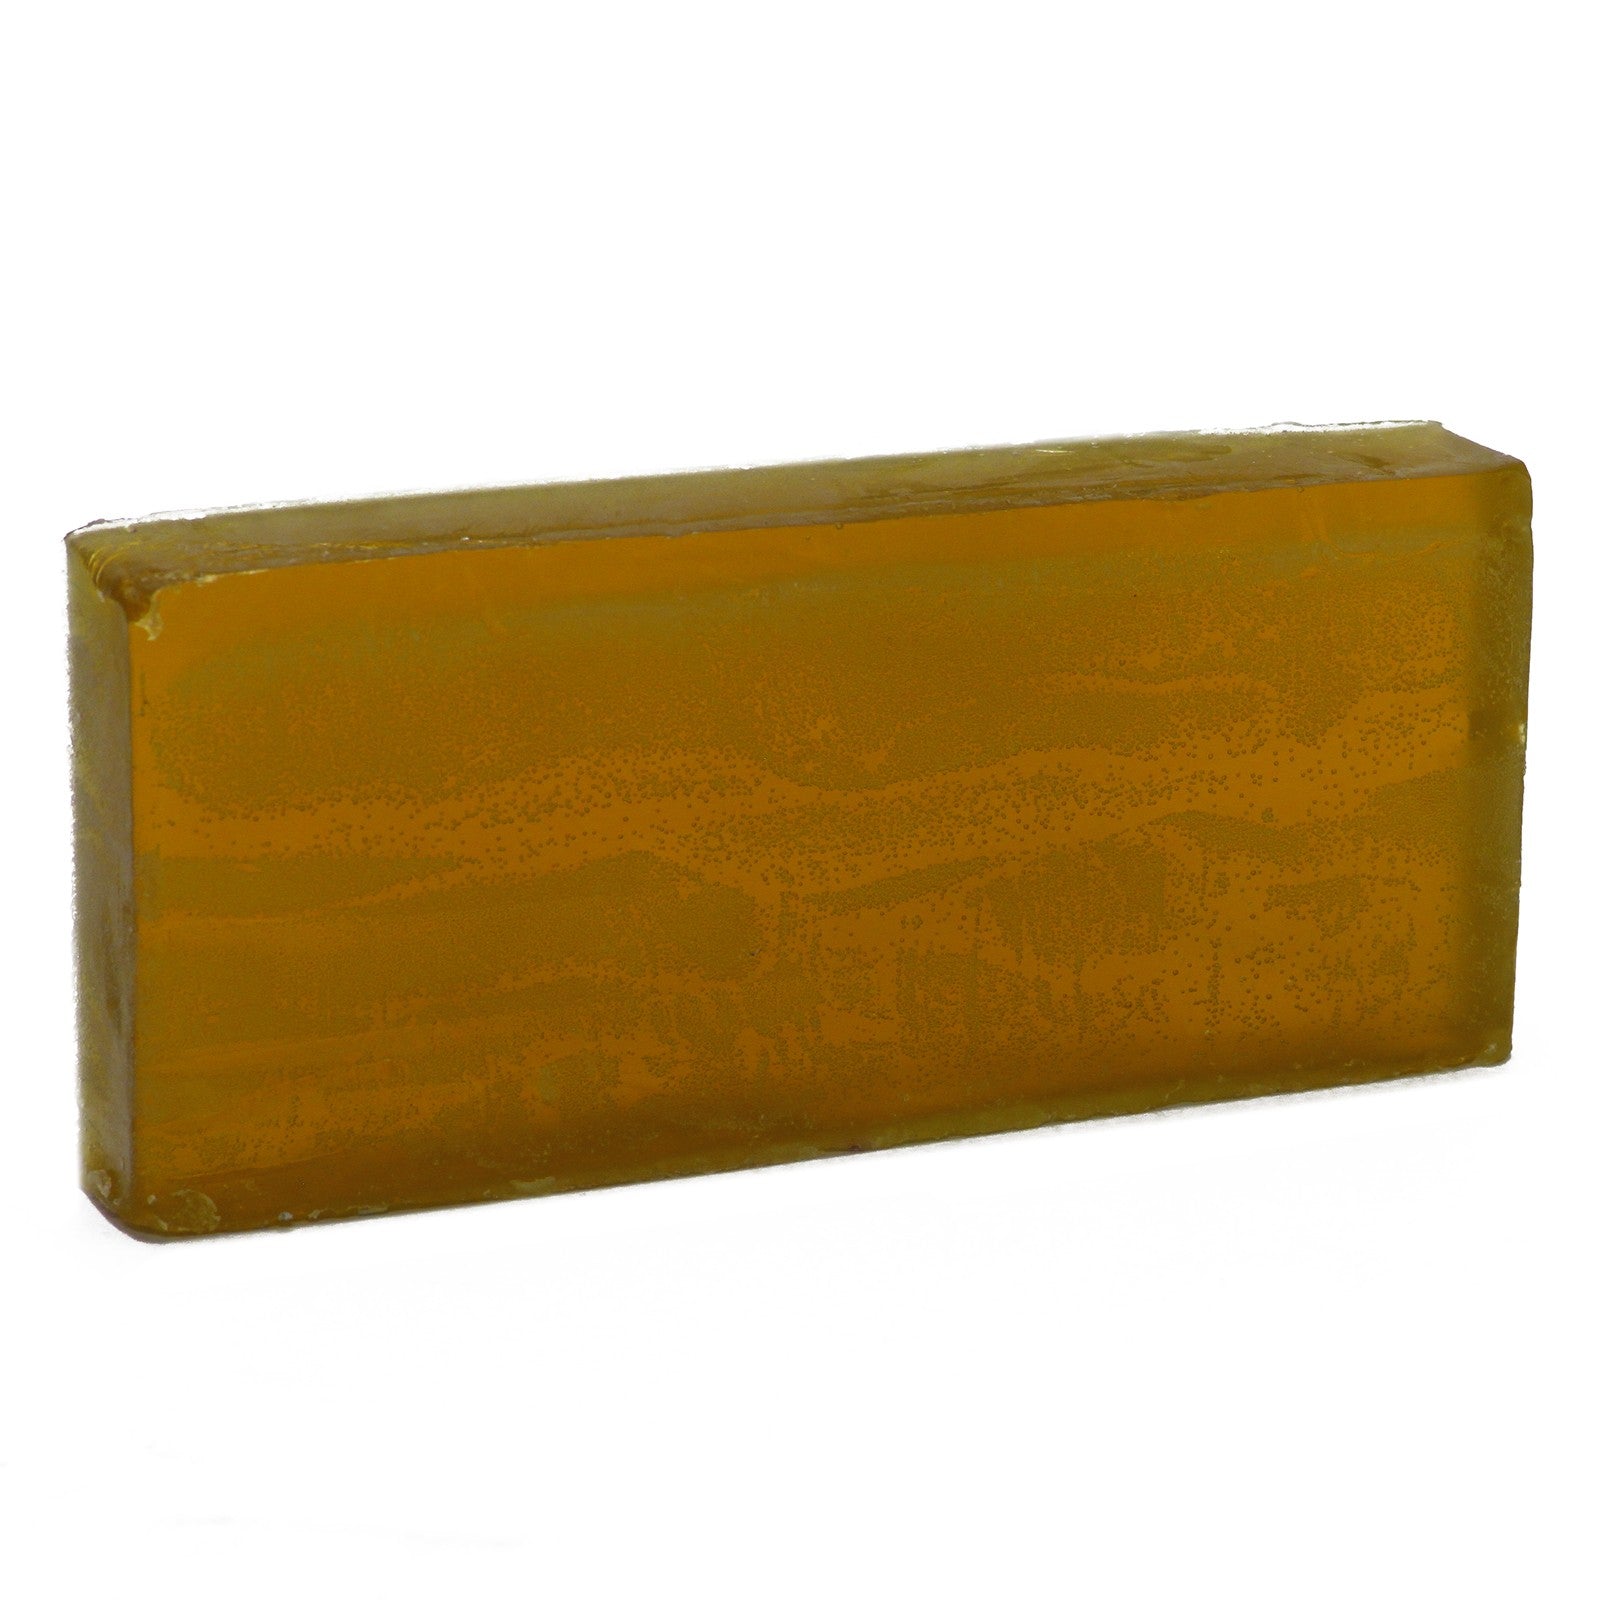 Ginger & Clove Essential Oil Soap Loaf - 2kg-